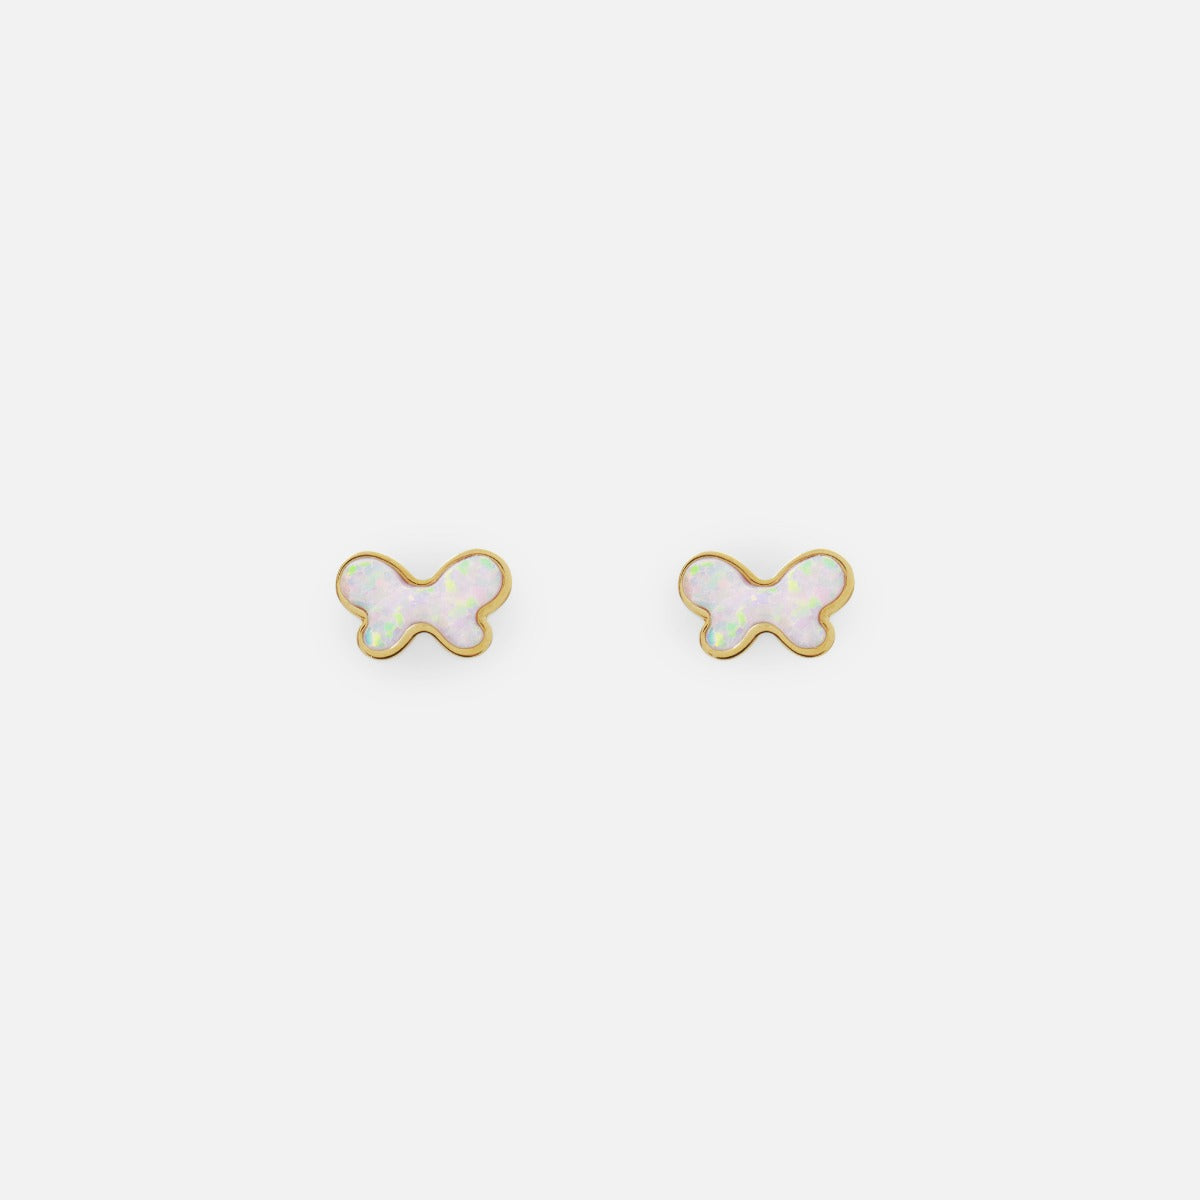 Mini boucles d’oreilles dorées nacre blanc en forme de papillon en acier inoxydable